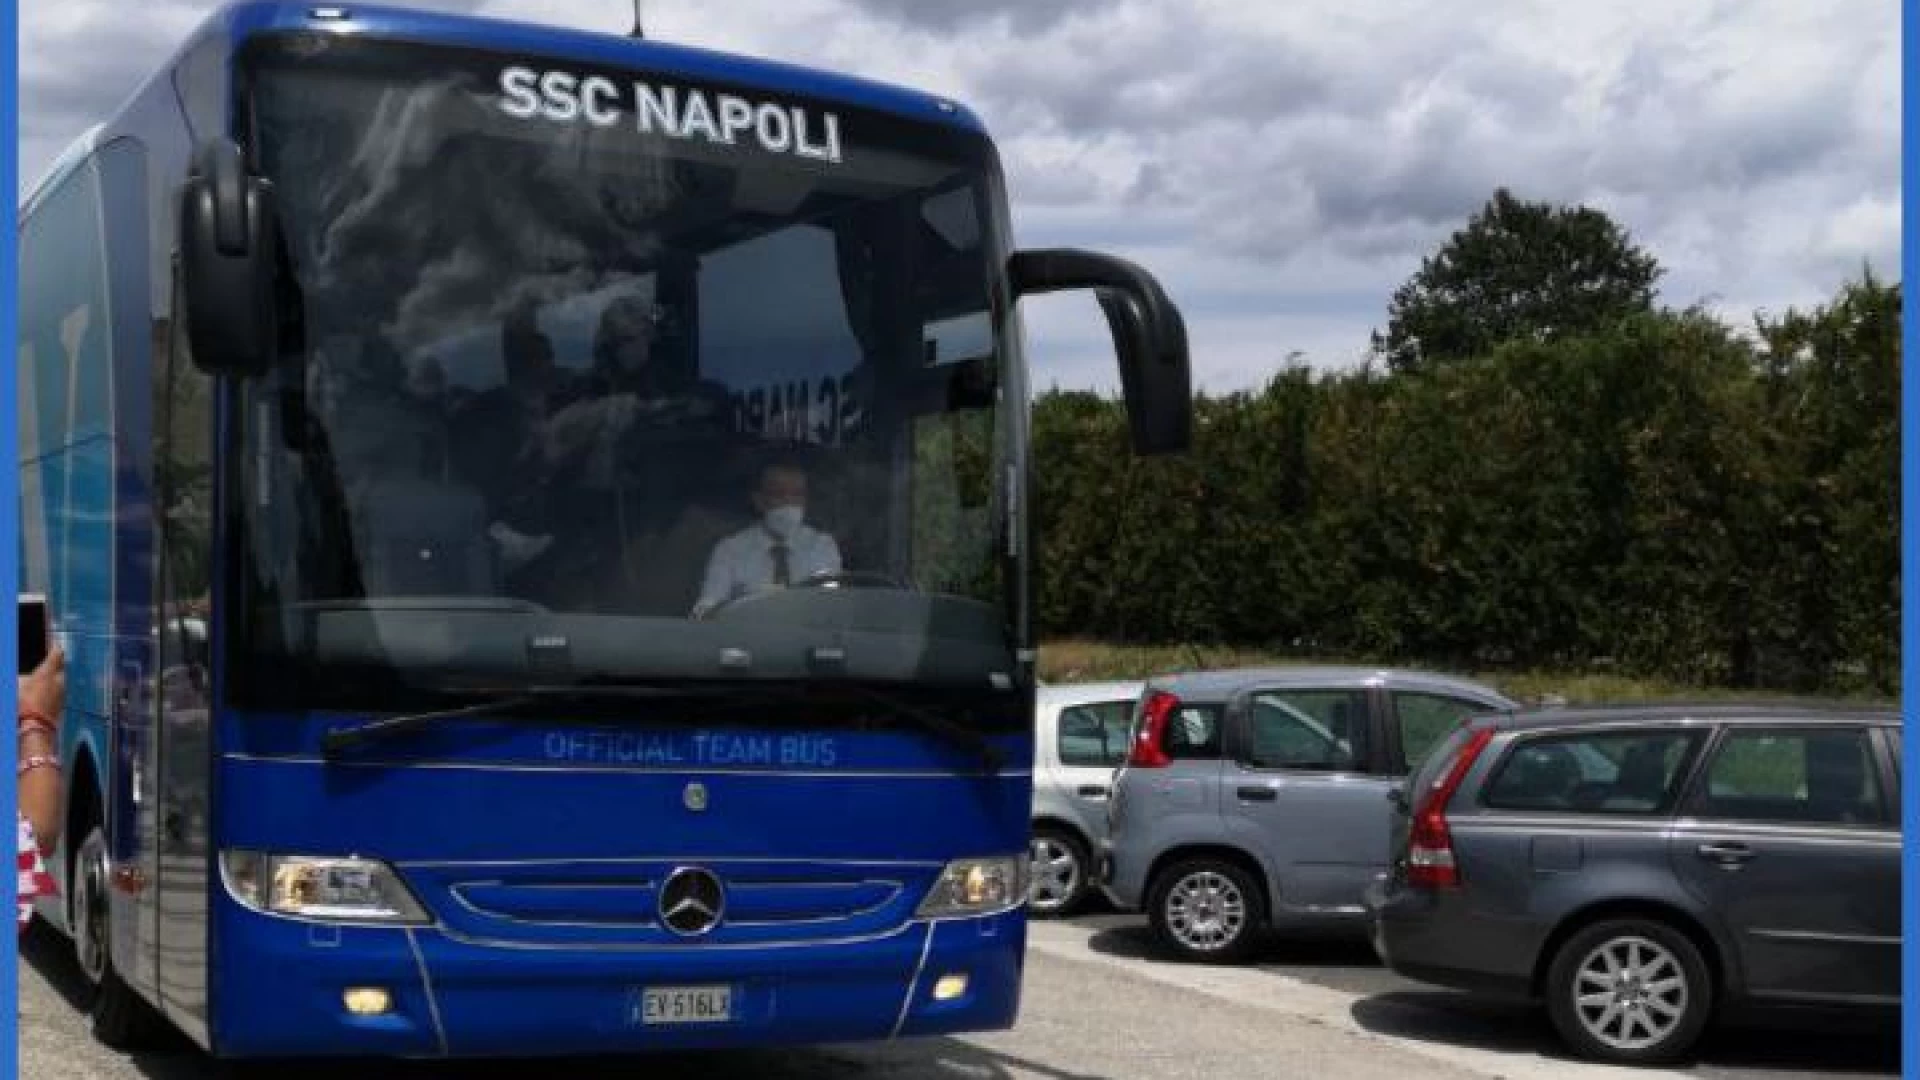 Il Napoli è arrivato a Rivisondoli. Inizia l'avventura abruzzese e noi siamo qui con Castello Azzurro.